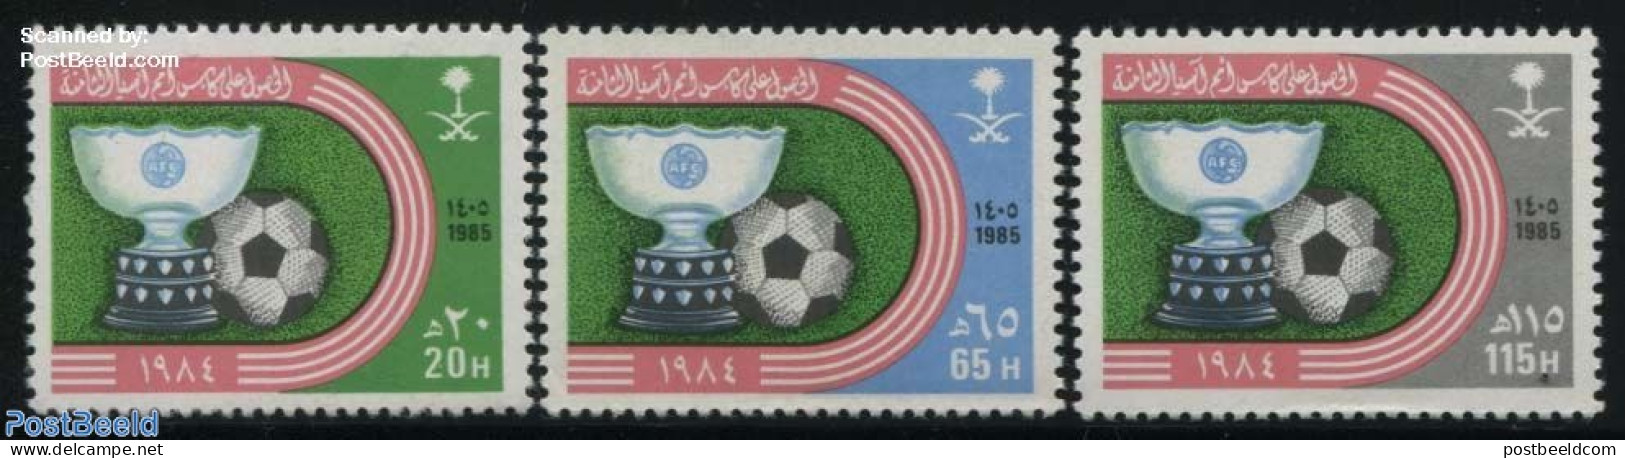 Saudi Arabia 1985 Asian Football Champion 3v, Mint NH, Sport - Football - Arabia Saudita